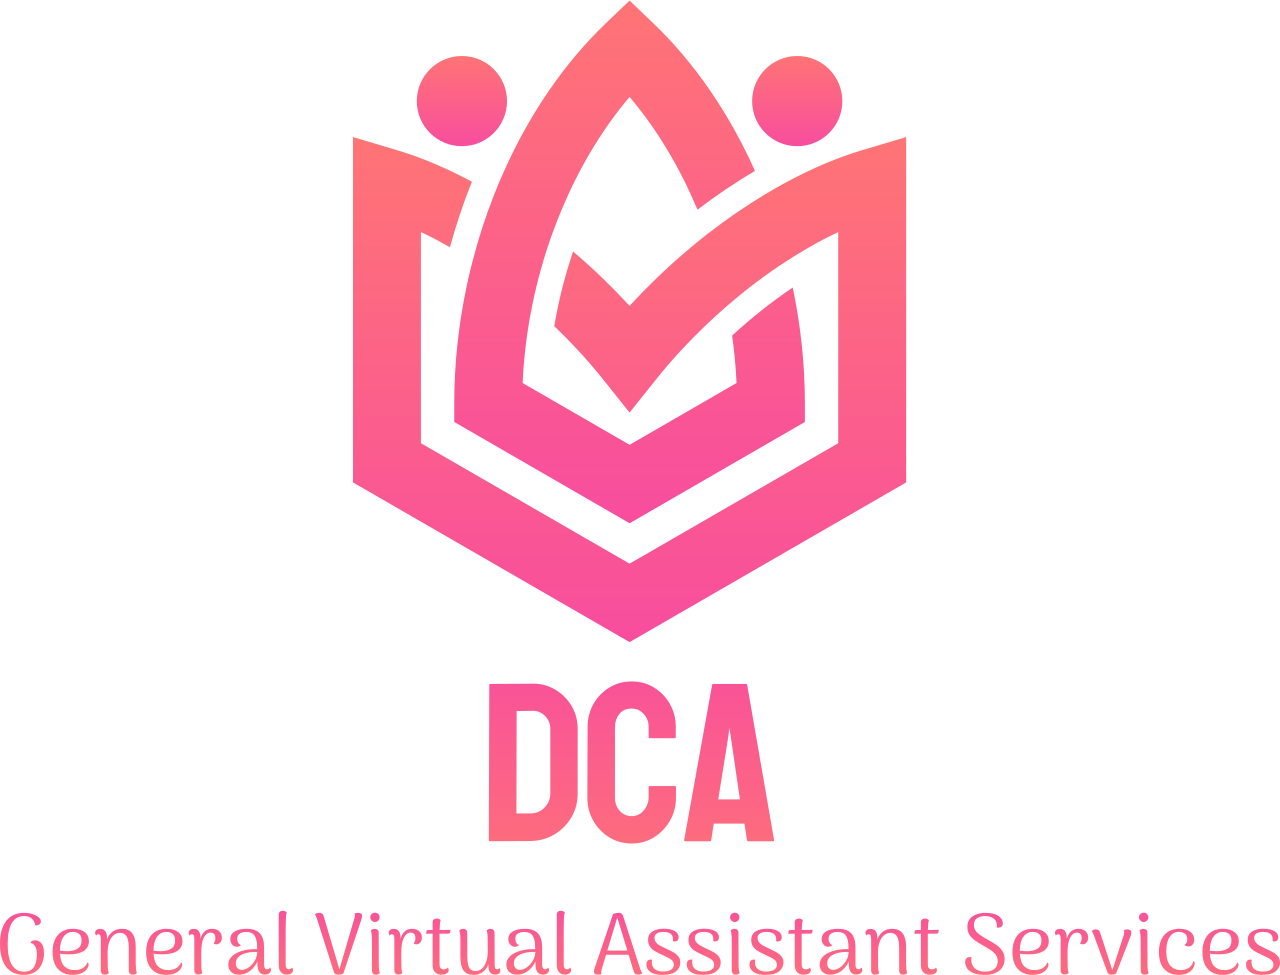 DCA's logo